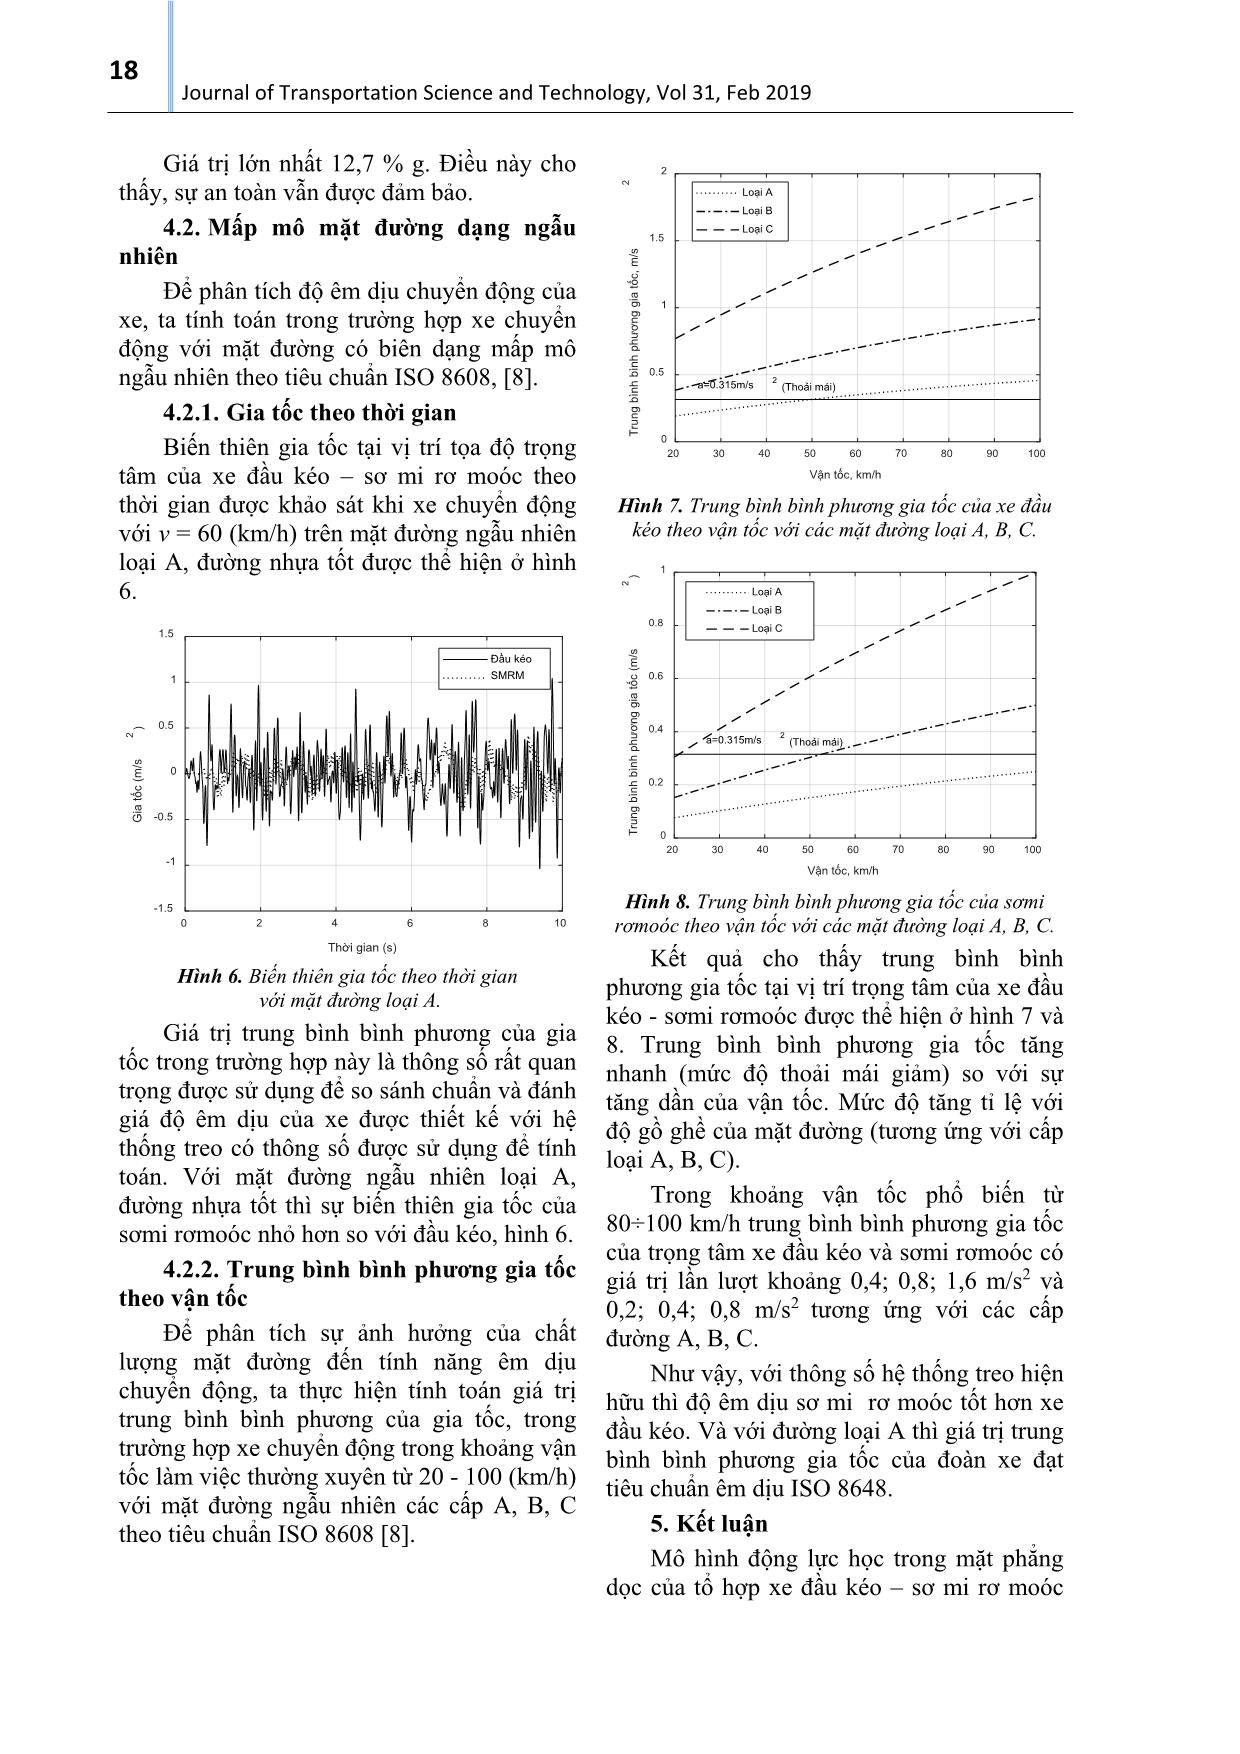 Phân tích động lực học theo phương thẳng đứng của tổ hợp xe đầu kéo – sơ mi rơ moóc bằng Matlab/Simmechanics trang 4